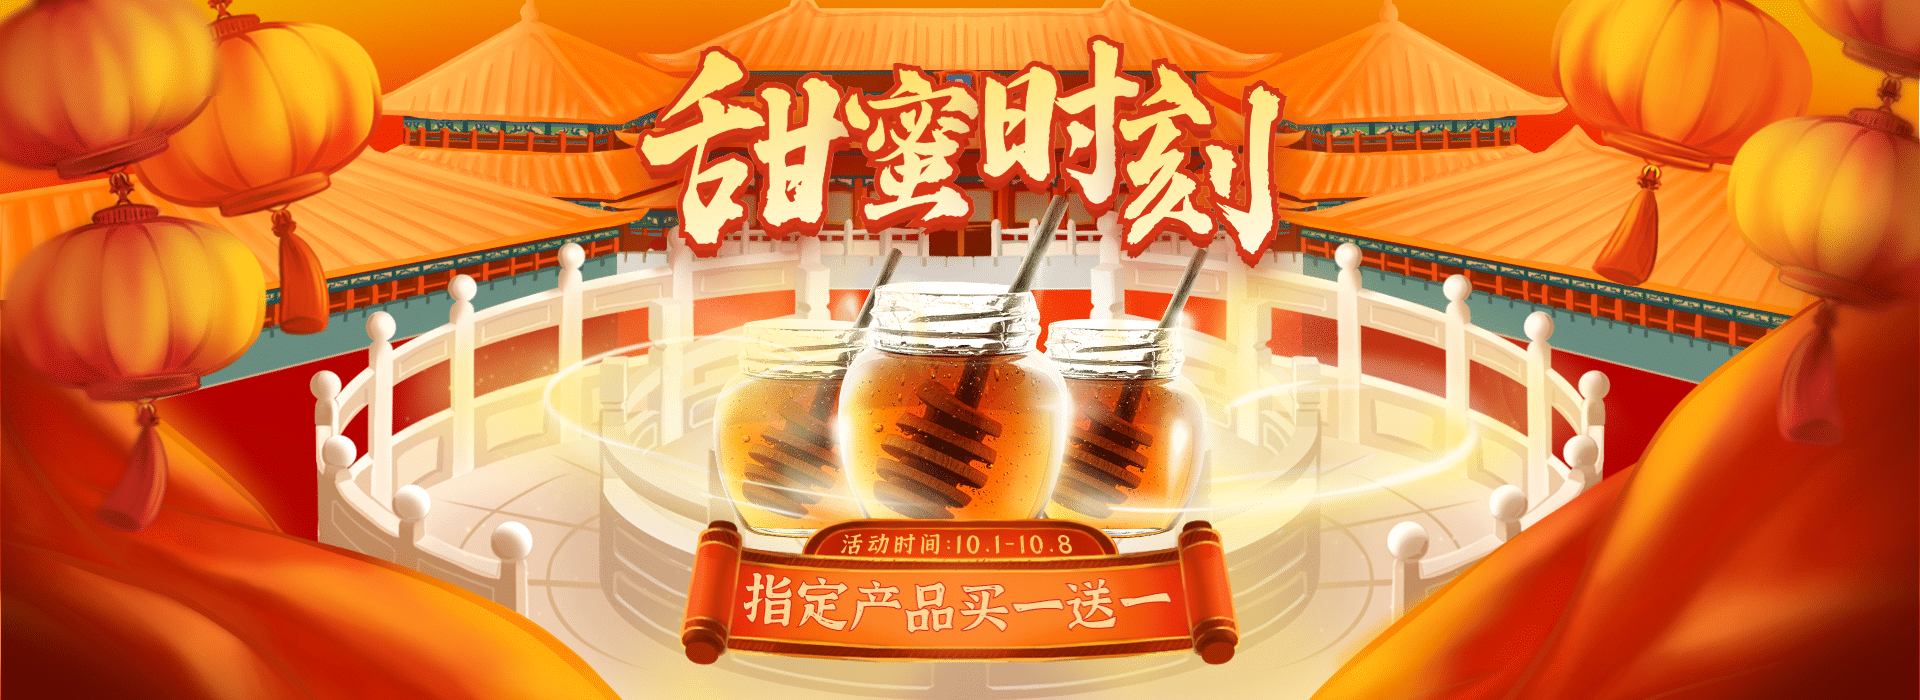 国庆节中国风蜂蜜电商横版海报